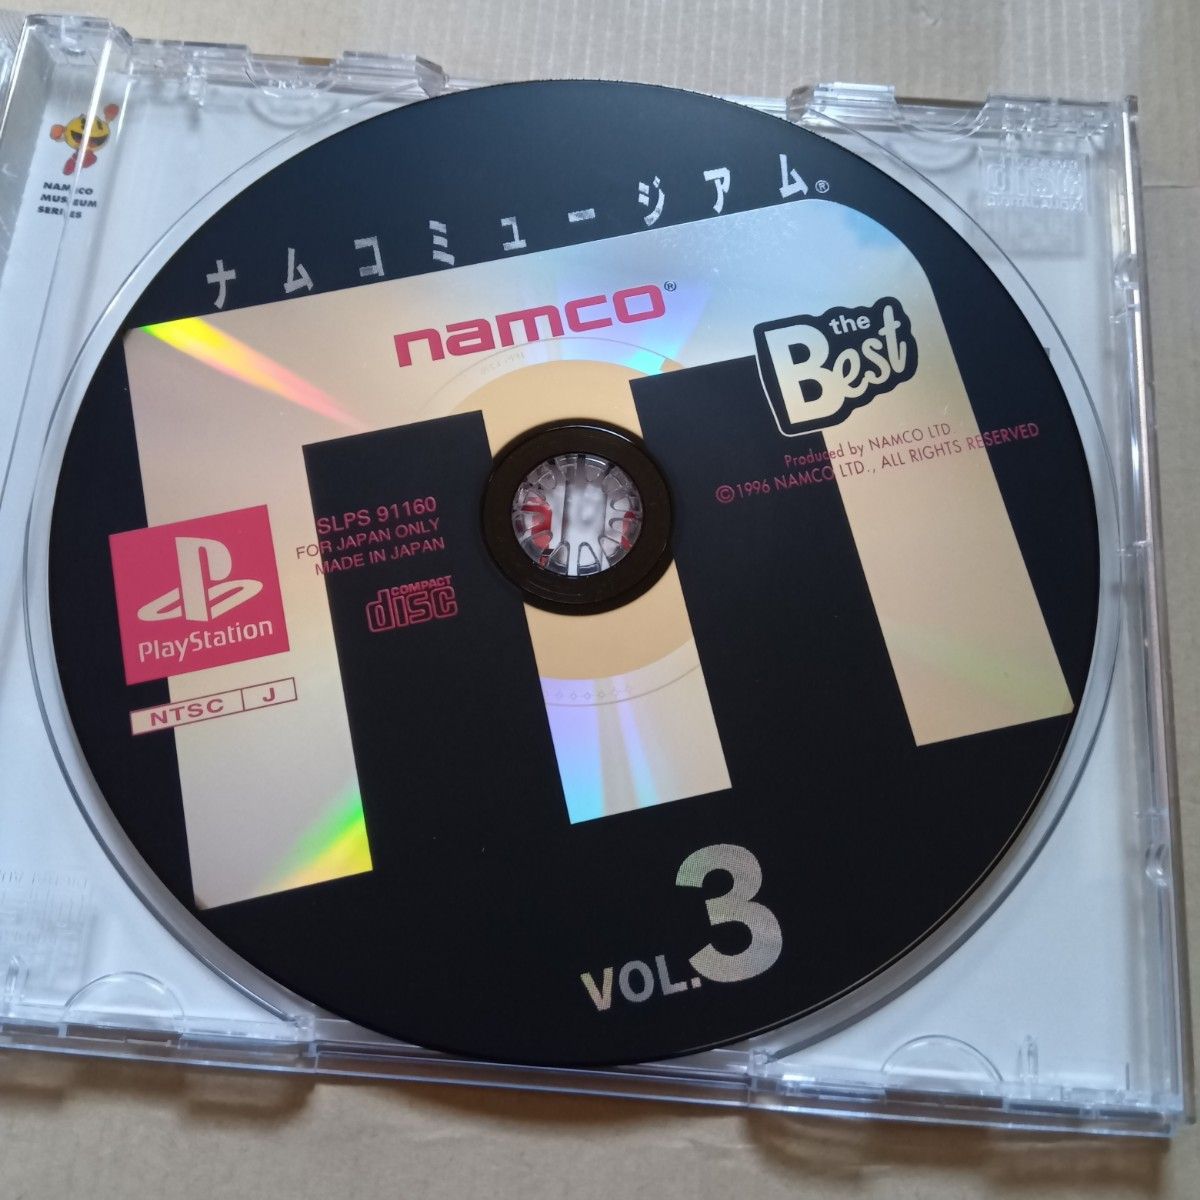 PS ナムコミュージアム VOL.3 PlayStation the Best